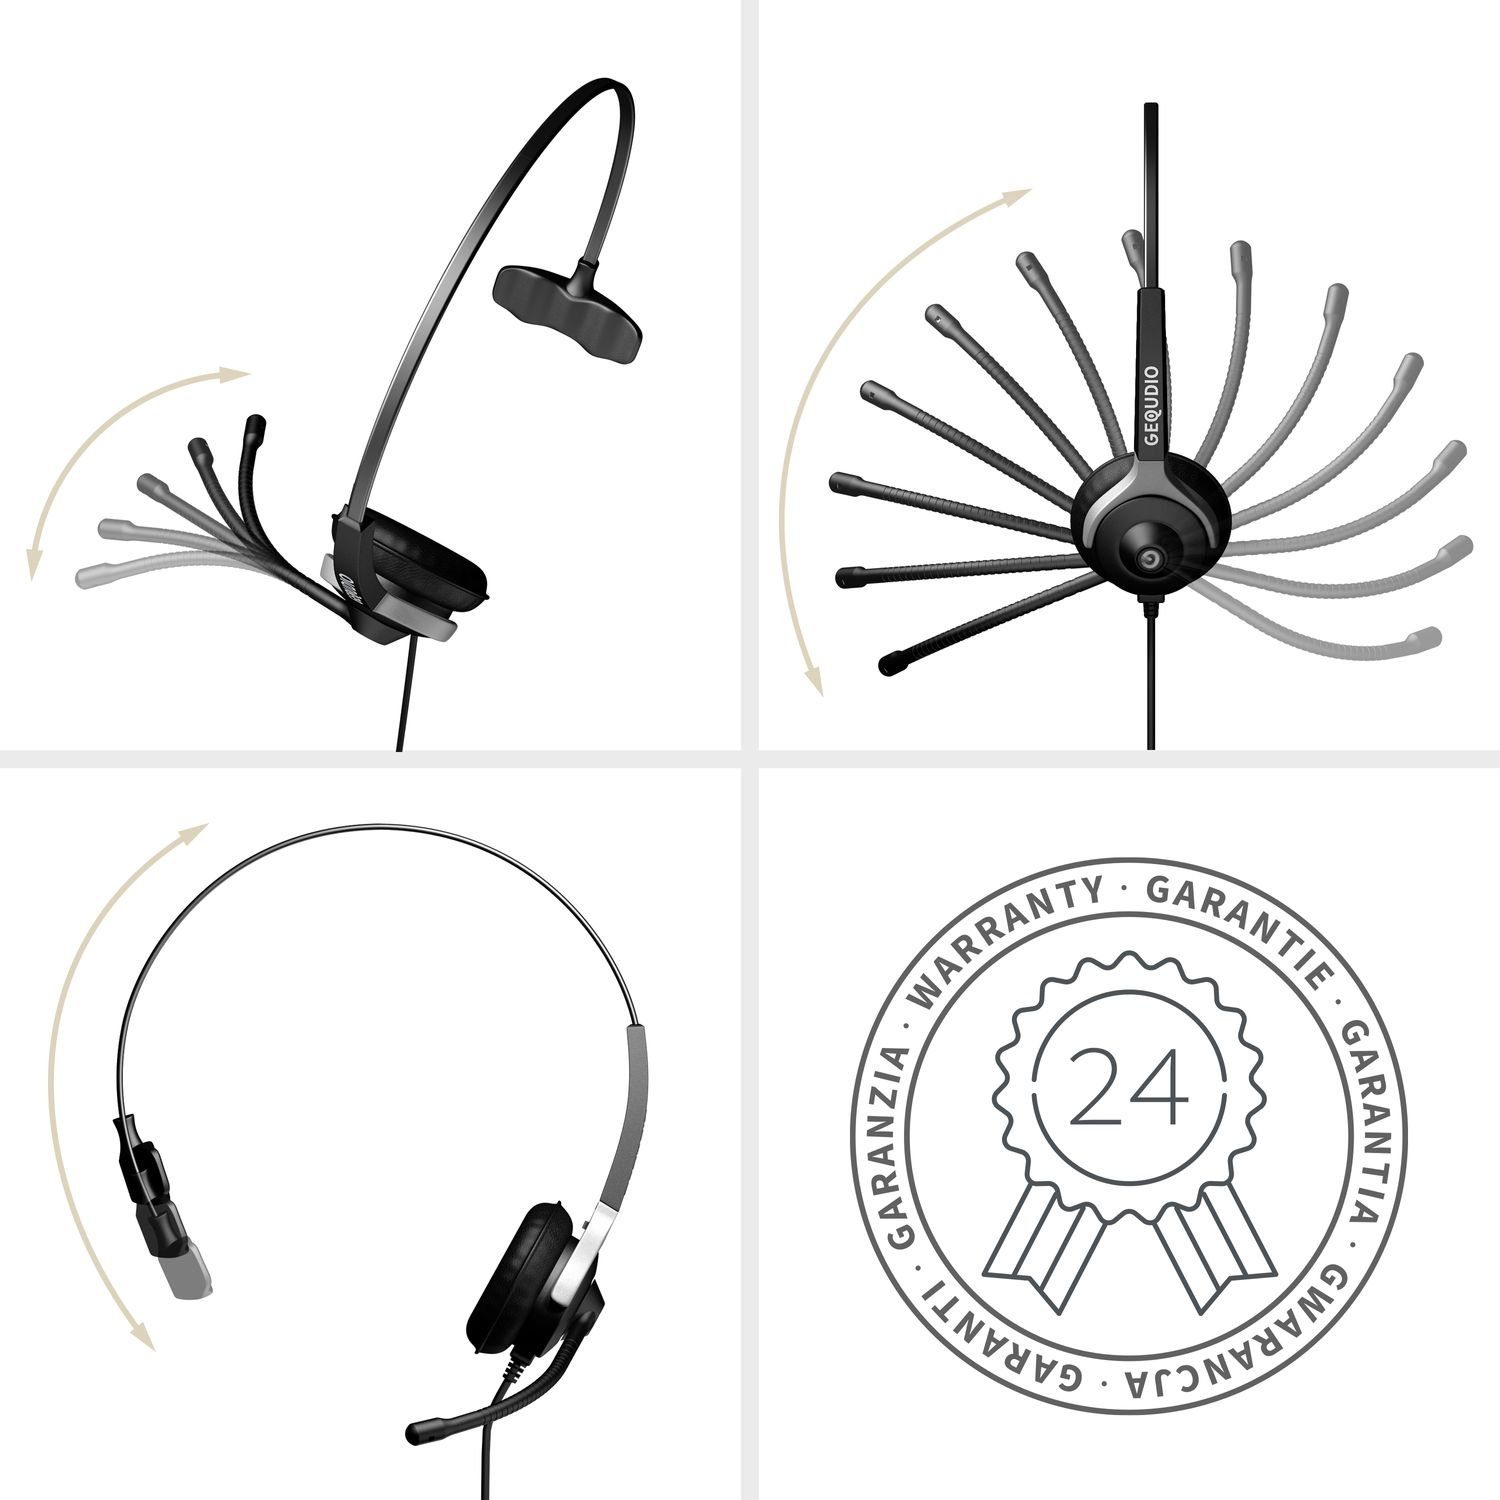 (1-Ohr-Headset, GEQUDIO Grandstream aus Federstahl, für leicht, Anschlusskabel) Avaya, für 60g Endgeräte, Wechselverschluss inklusive RJ-Anschluss Bügel Snom, mit Telefone mehrere mit Yealink, Headset